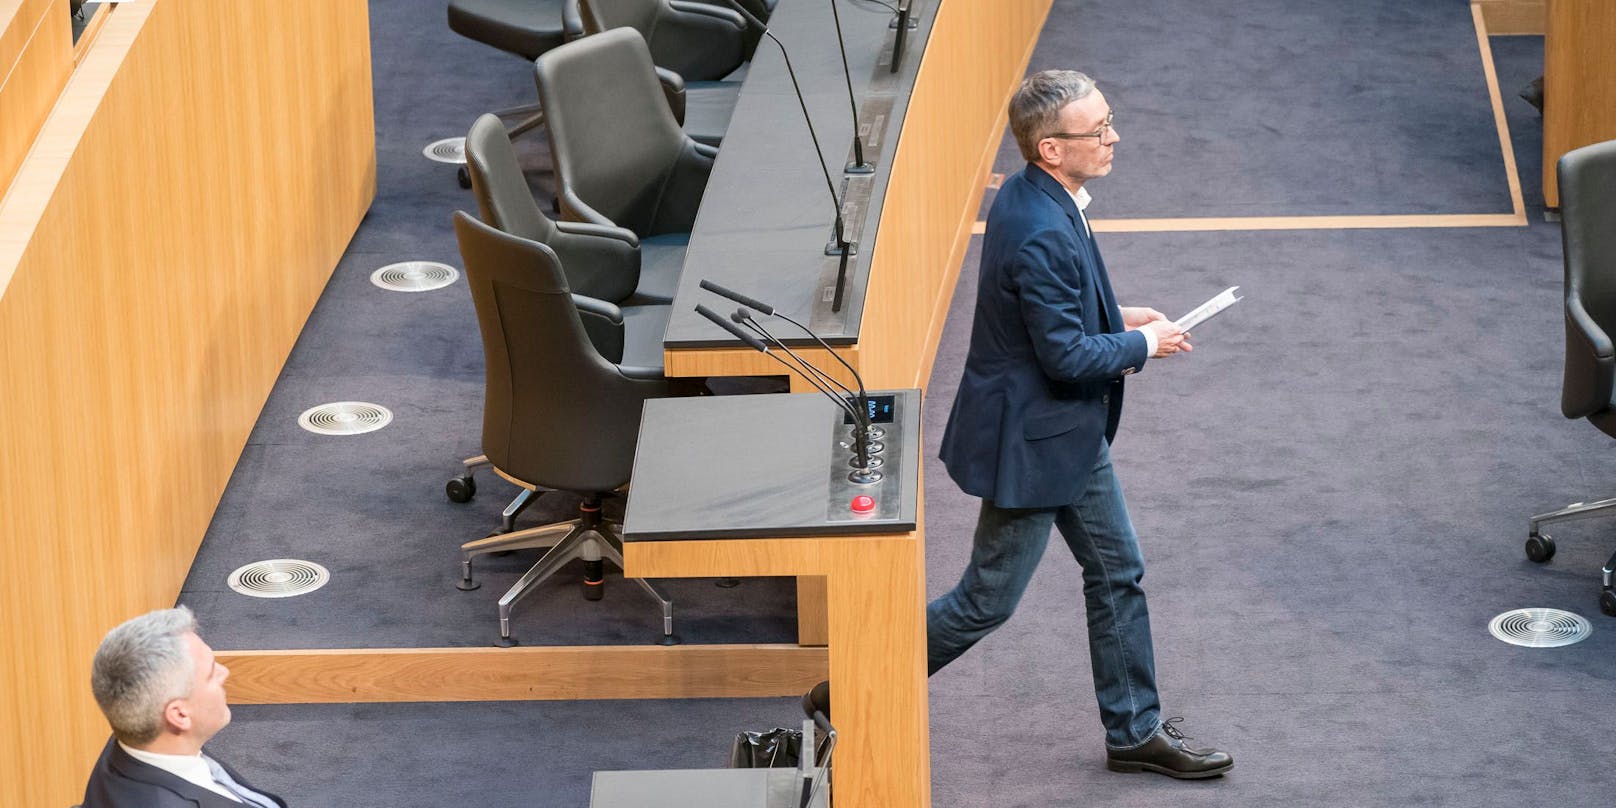 FPÖ-Parteichef Herbert Kickl stellt sich vehement gegen die Rede des ukrainisches Präsidenten im Parlament.